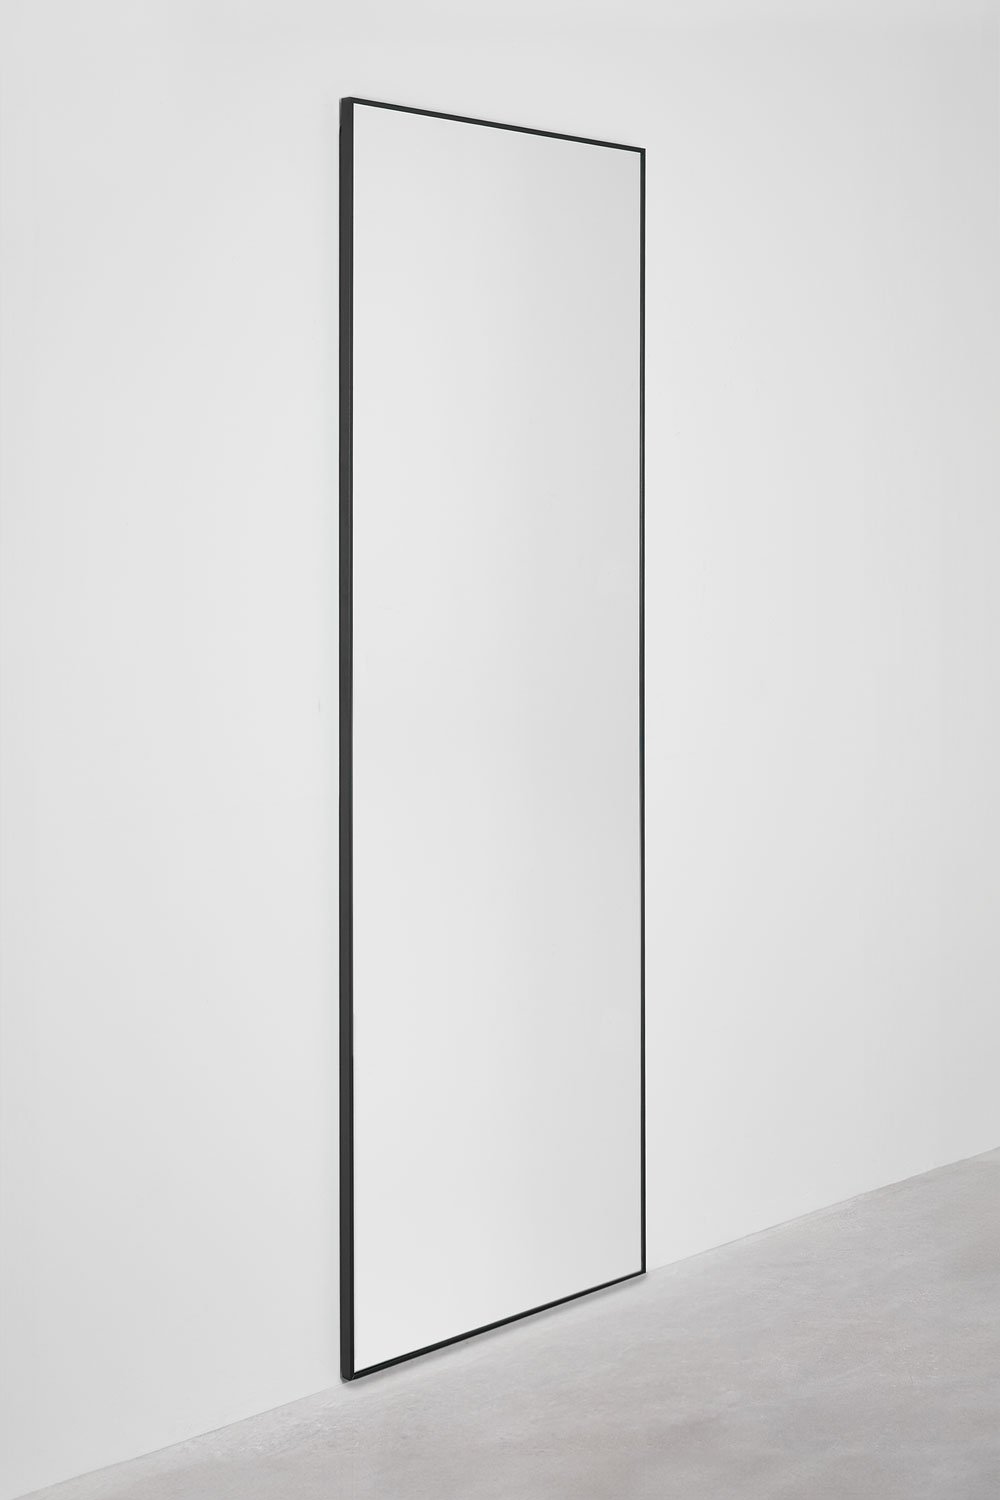 Specchio da parete rettangolare in alluminio (70x200 cm) Mirjam, immagine della galleria 2